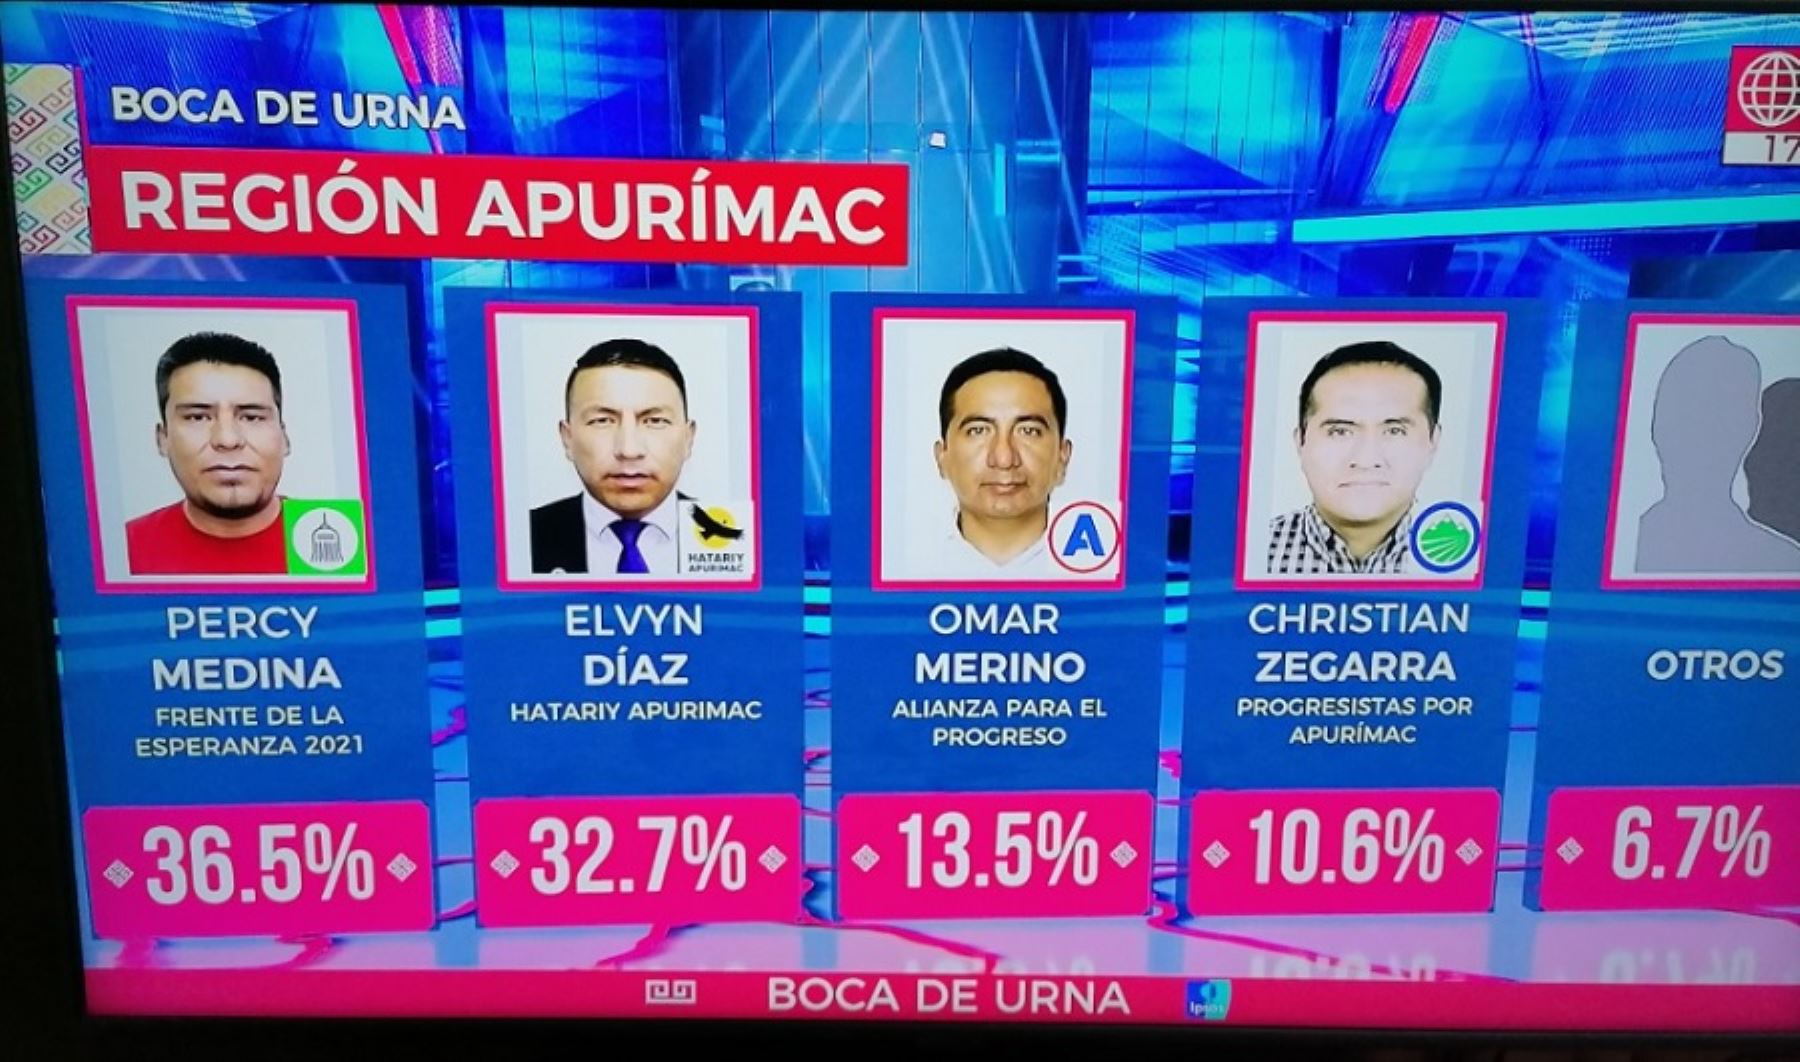 Percy Medina, candidato por el partido político Frente de la Esperanza es el virtual nuevo gobernador regional de Apurímac, al obtener el 36.5 % de las preferencias electorales, según los sondeos efectuados “a boca de urna” efectuados por la encuestadora Ipsos.